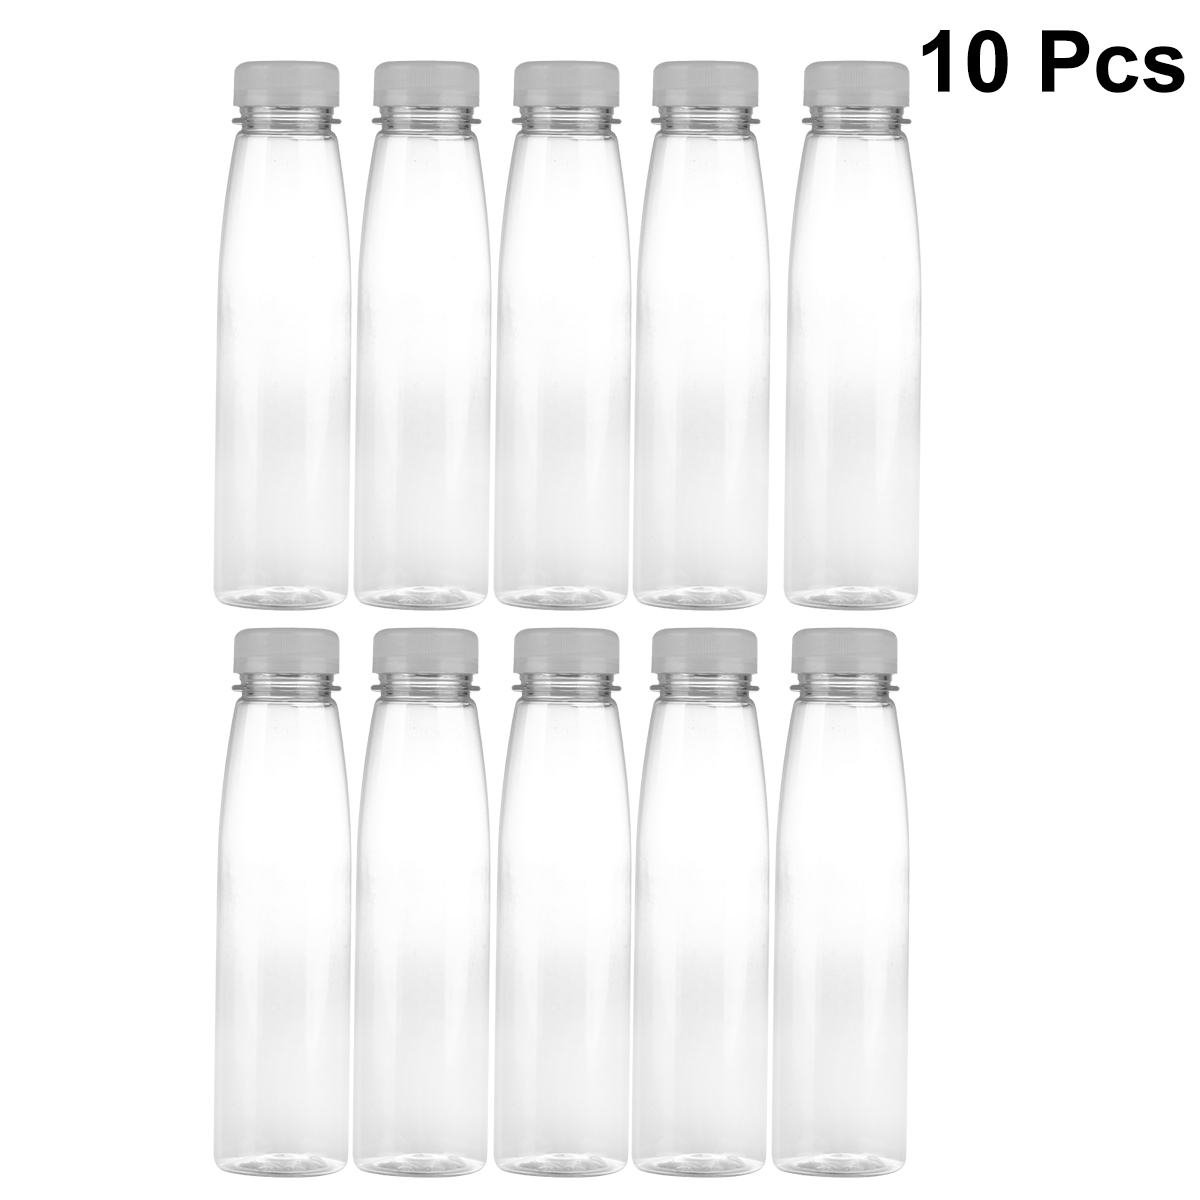 Hemoton 10PCS 330ml Empty Storage Containers Clear PET Bottles Plastic Beverage Drink Bottle Juice Bottle Jar with Lids (Random Color Caps) - image 3 of 6